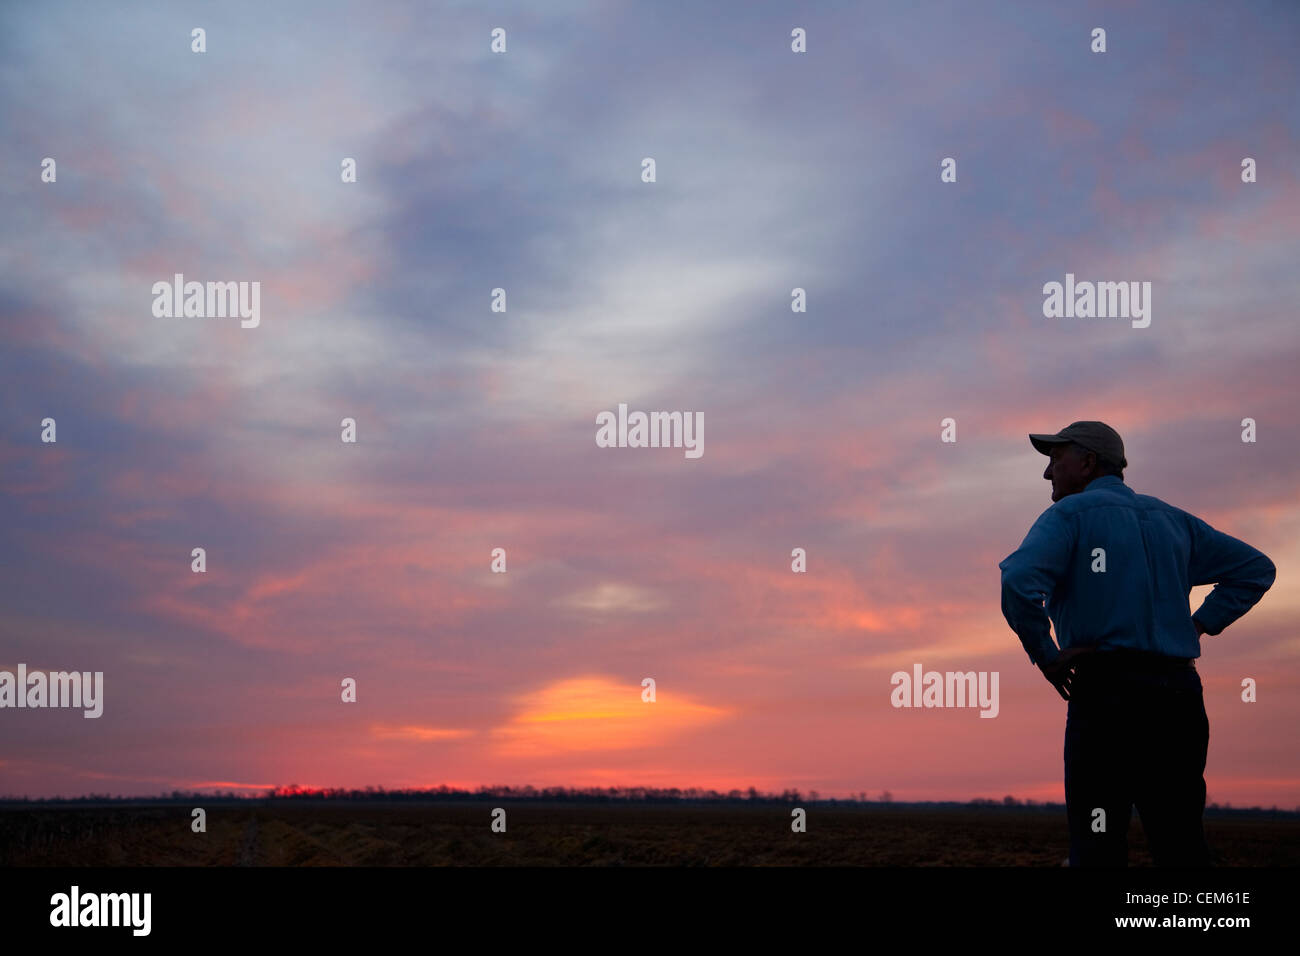 Agricoltura - un agricoltore (coltivatore) si affaccia sul suo campo di sunrise / Eastern Arkansas, Stati Uniti d'America. Foto Stock